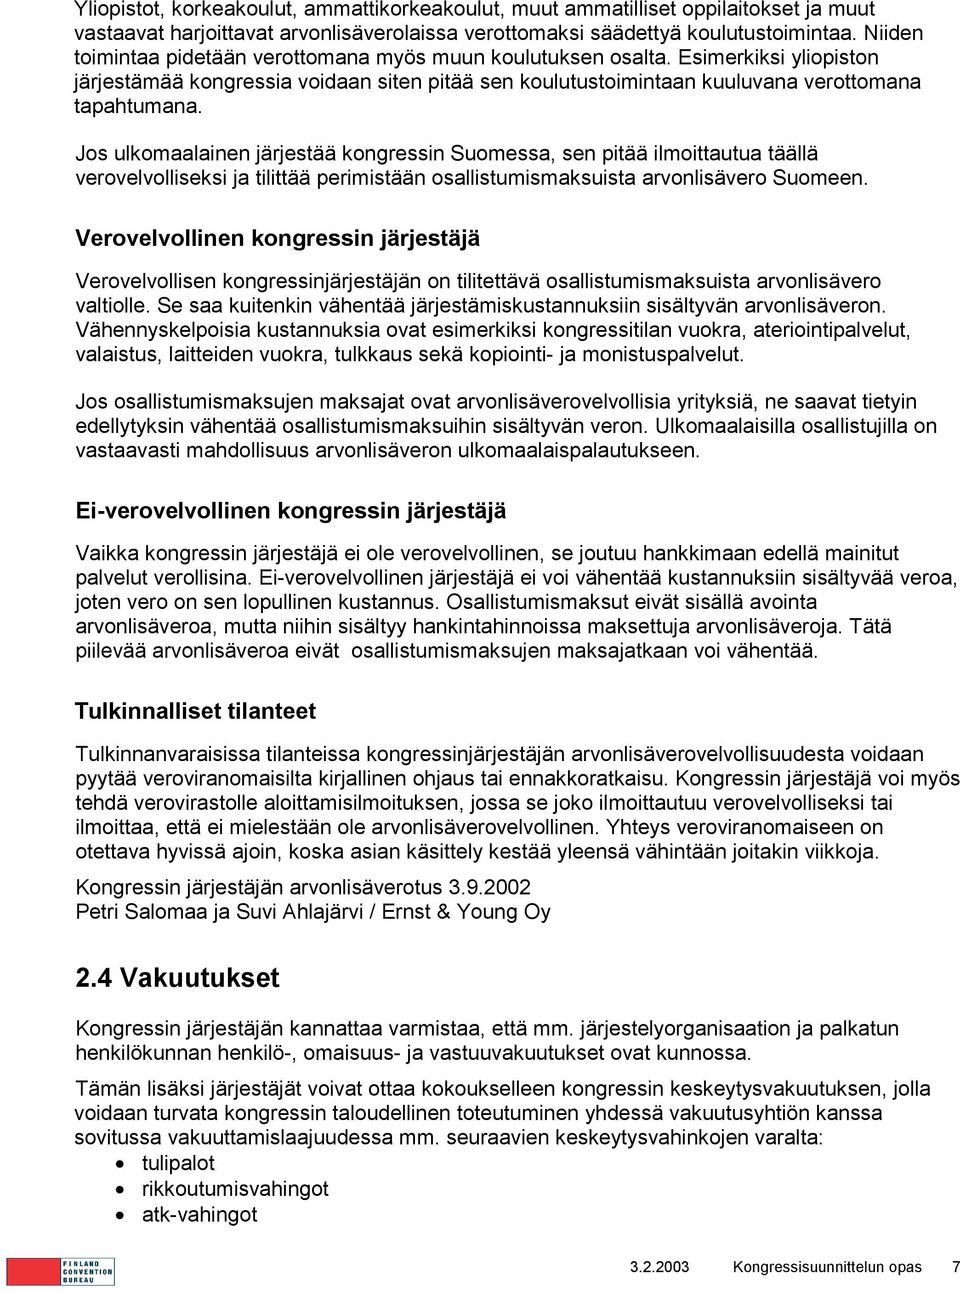 Jos ulkomaalainen järjestää kongressin Suomessa, sen pitää ilmoittautua täällä verovelvolliseksi ja tilittää perimistään osallistumismaksuista arvonlisävero Suomeen.